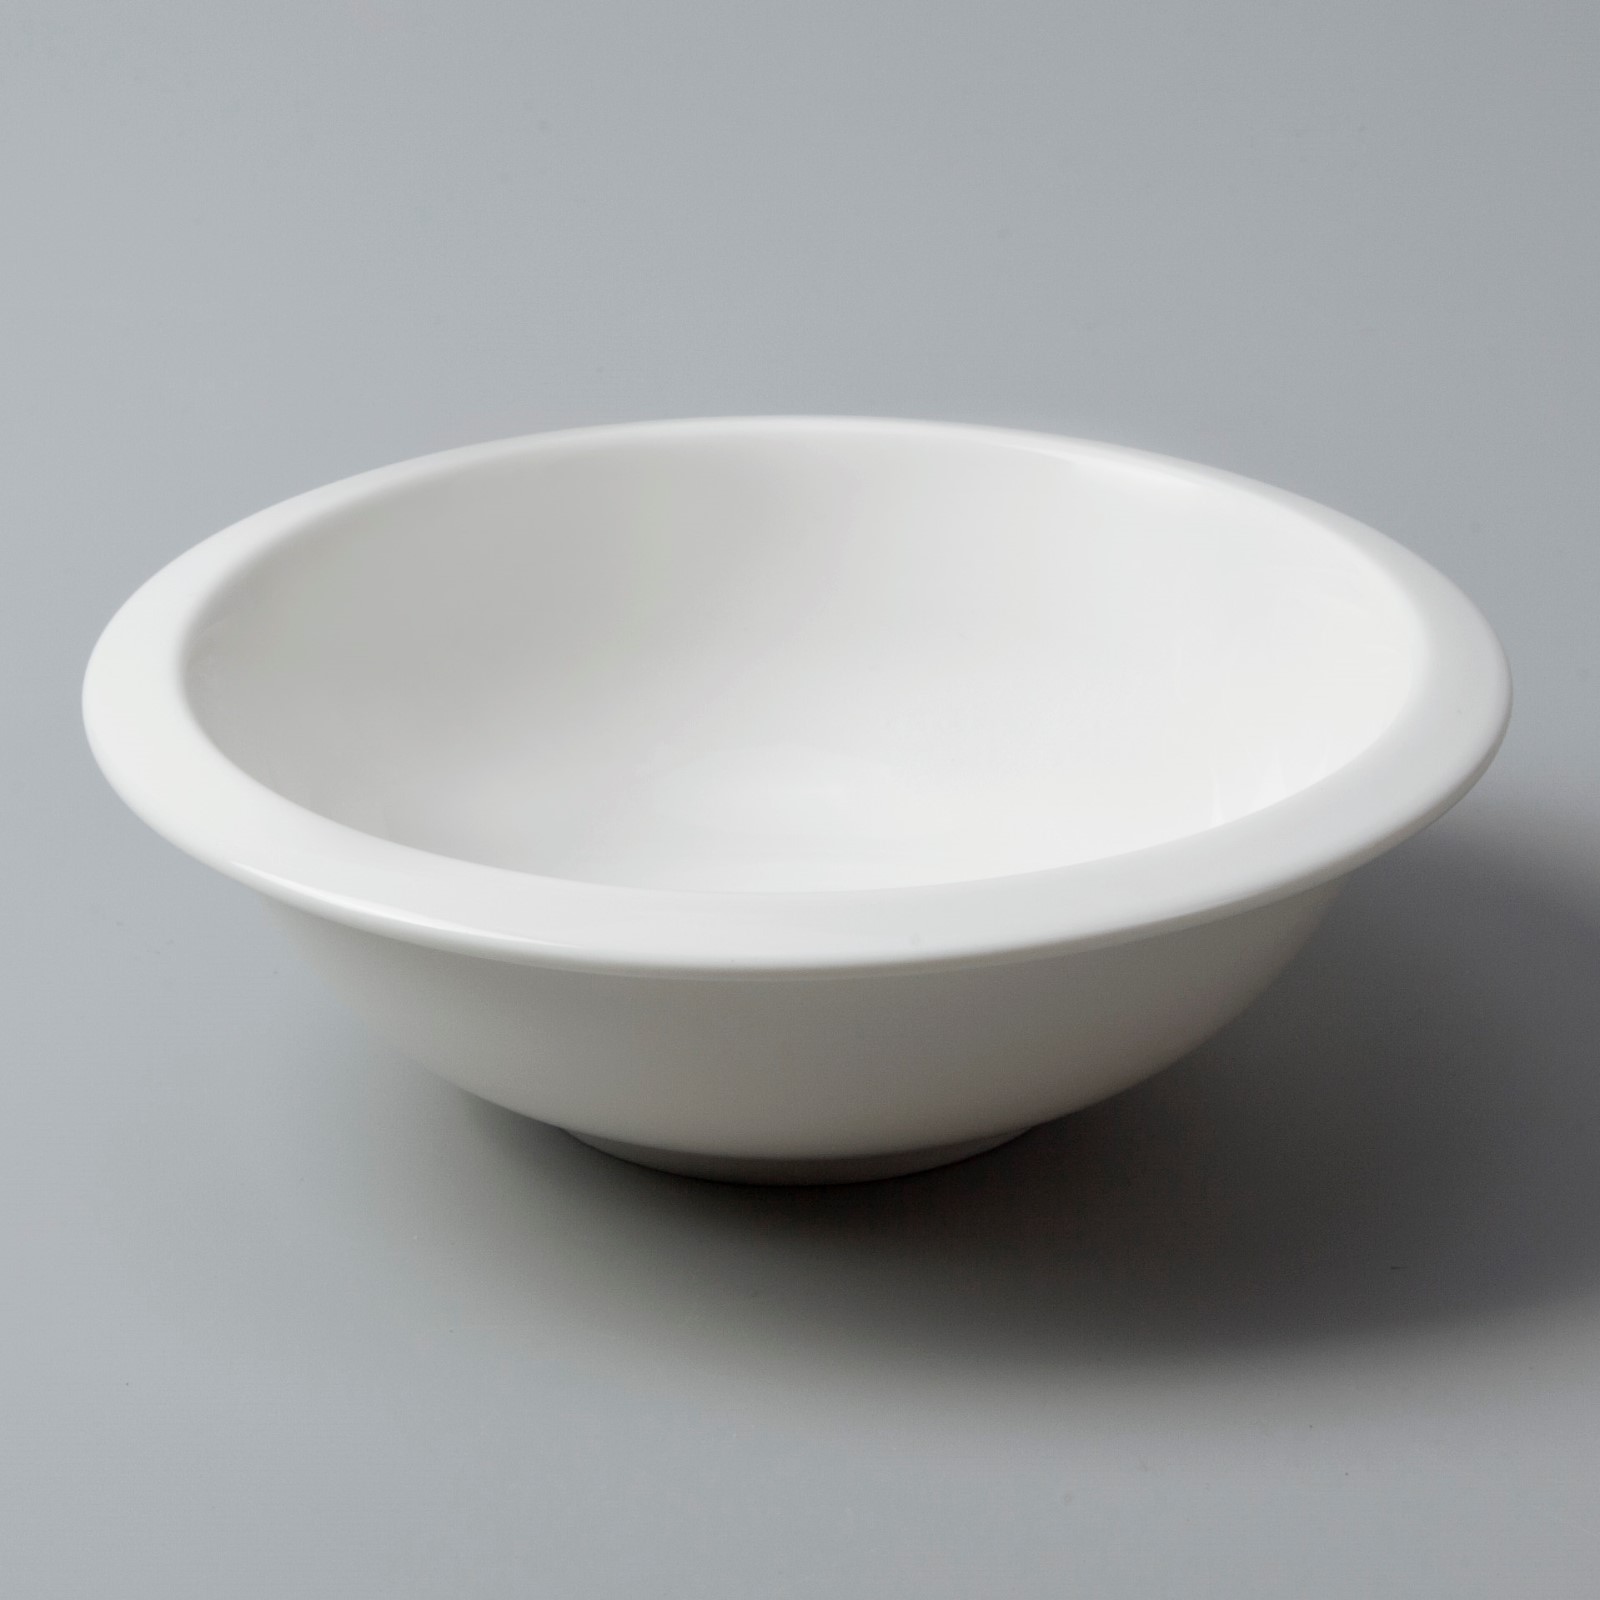 bulk restaurant porcelain dinnerware from China for restaurant Two Eight-11